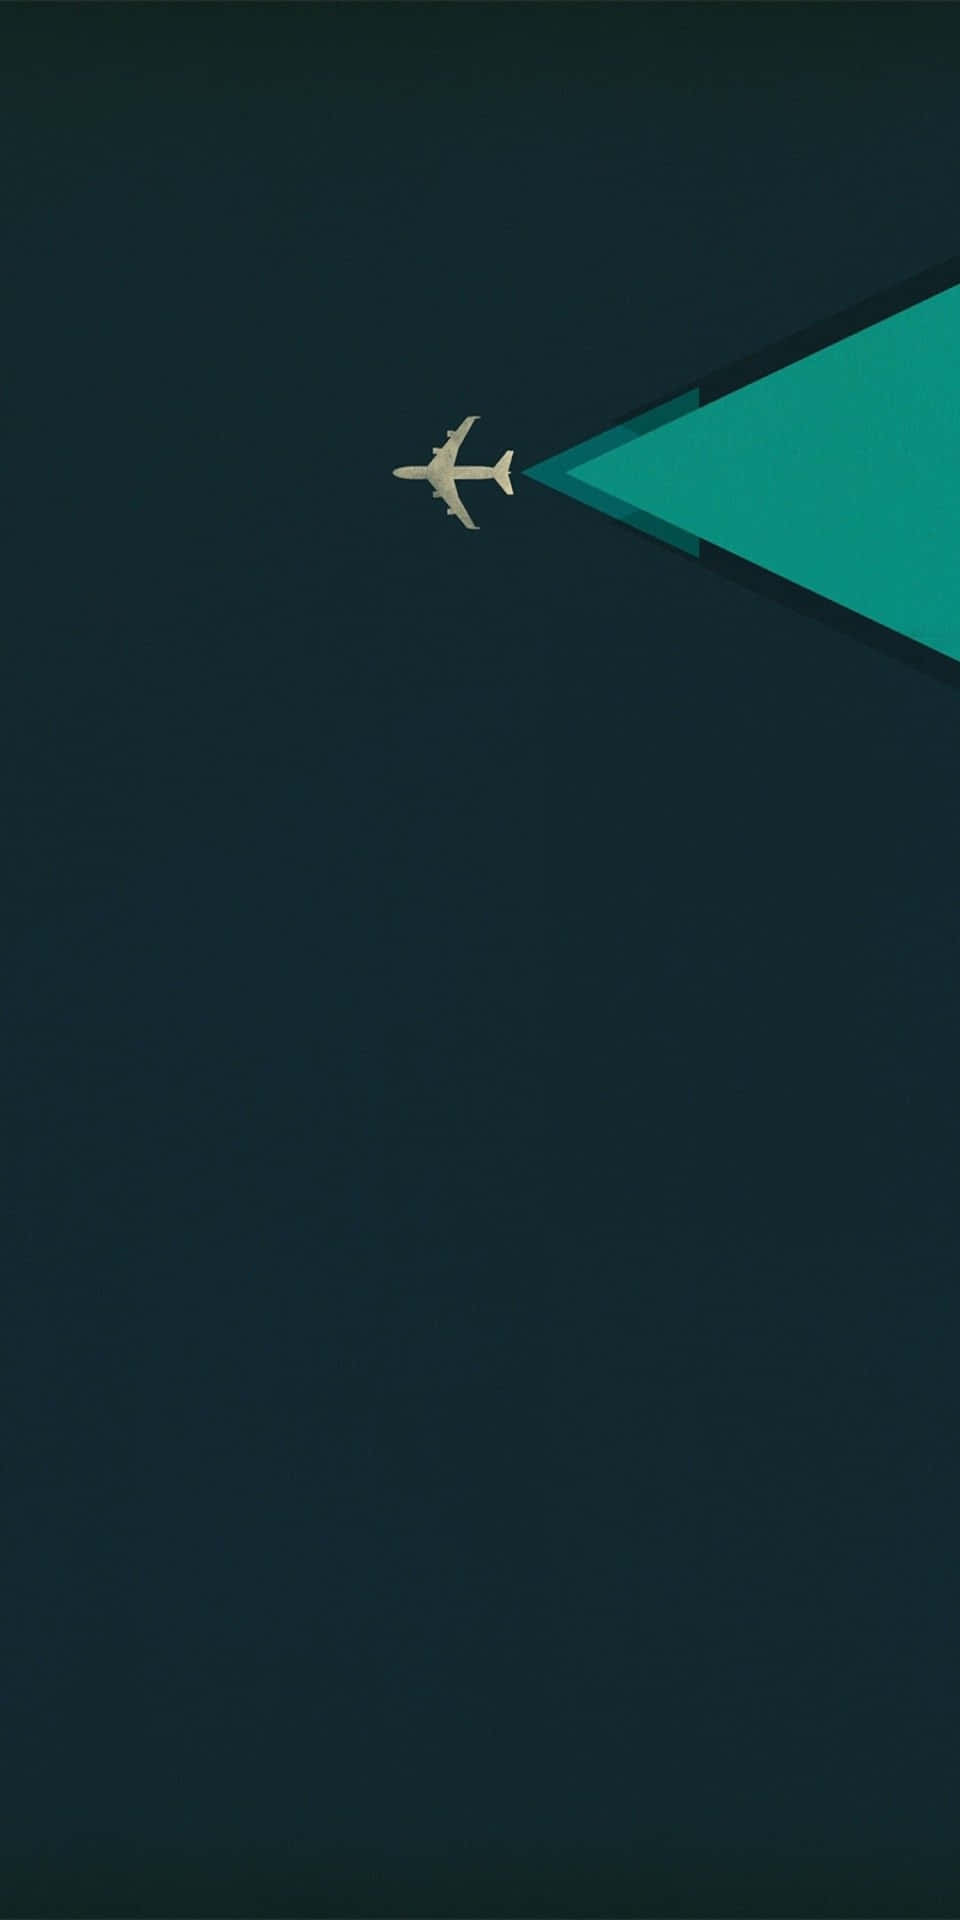 Pixel3 Minimaler Hintergrund Mit Einem Flugzeug, Das Mit Einem Streifen Grün Gleitet.